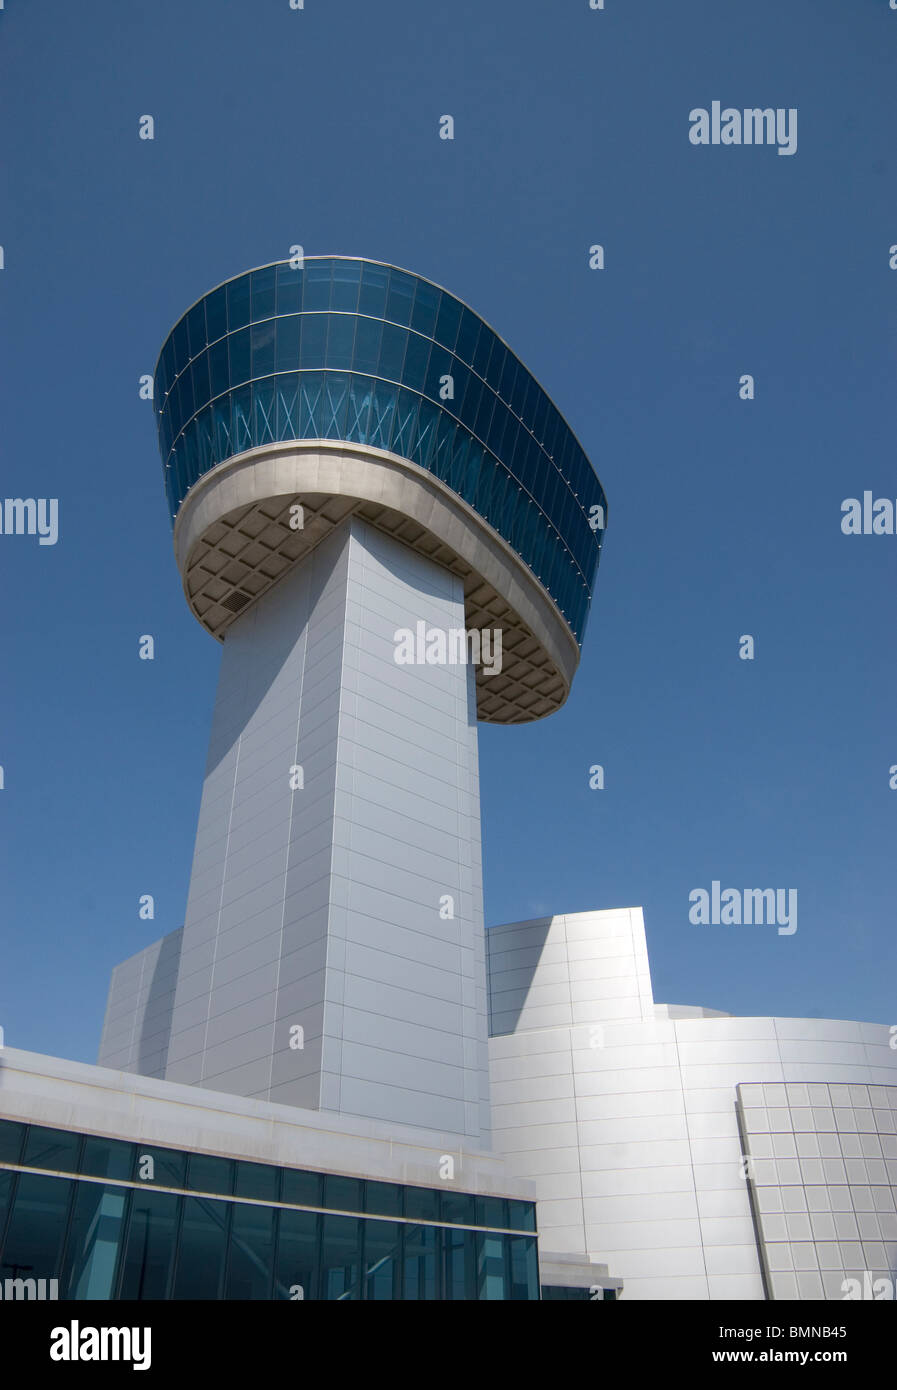 Donald D. Engen torre di osservazione presso il Museo Nazionale dell'aria e dello spazio, l'Aeroporto Internazionale Washington Dulles, Chantilly, VA Foto Stock